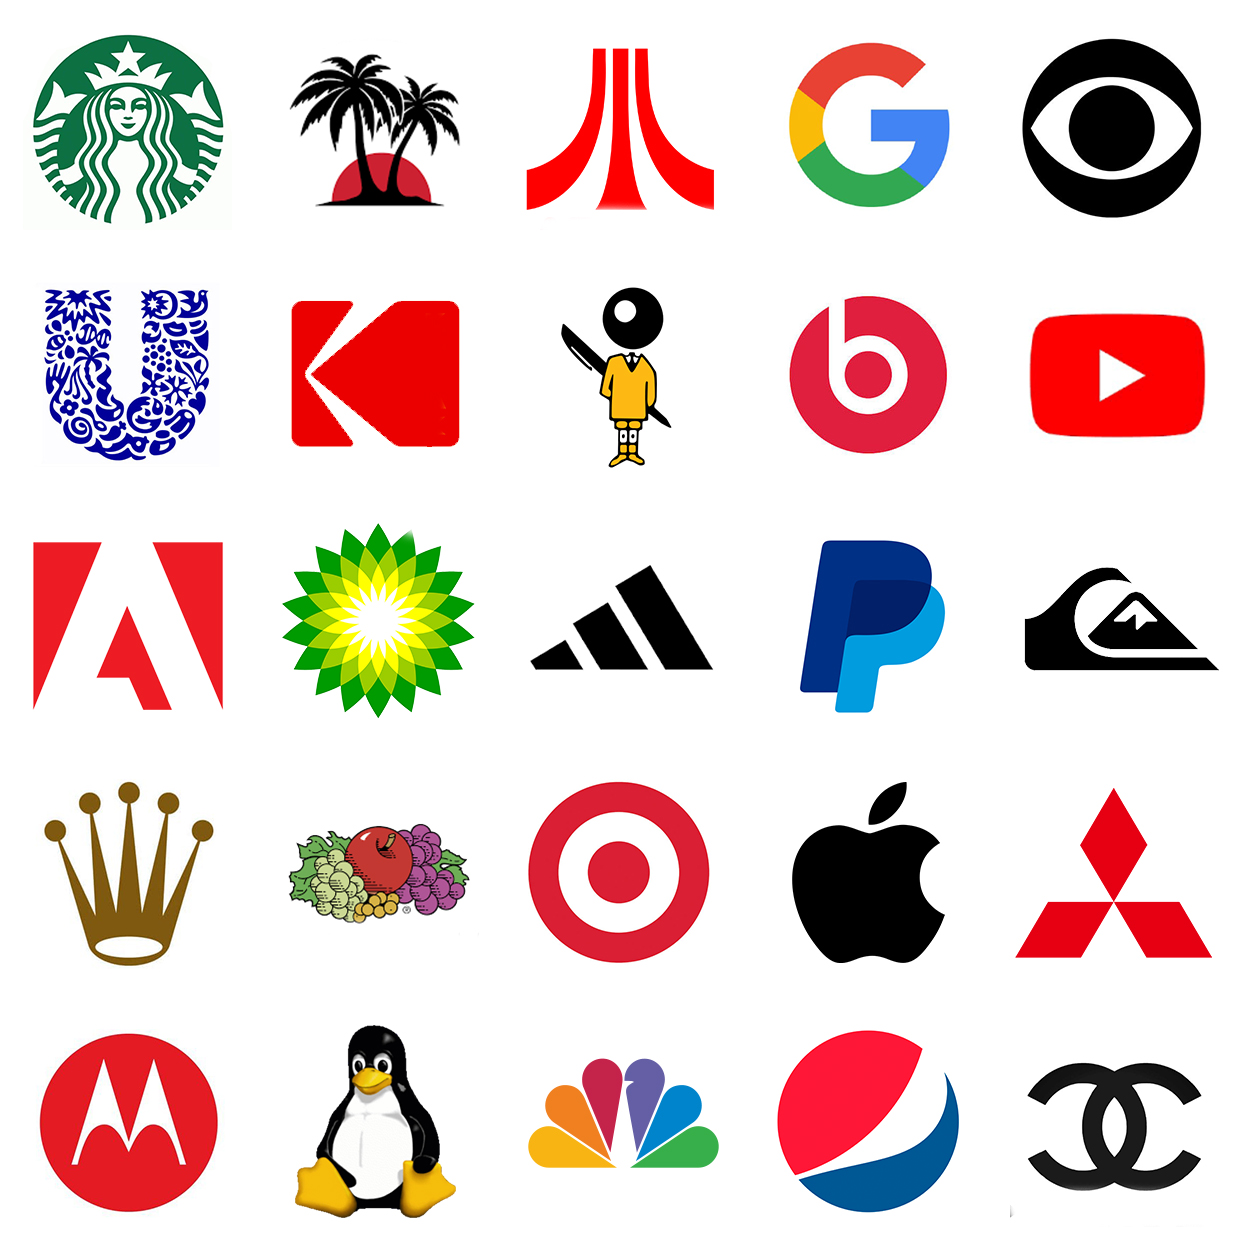 Company logos quiz